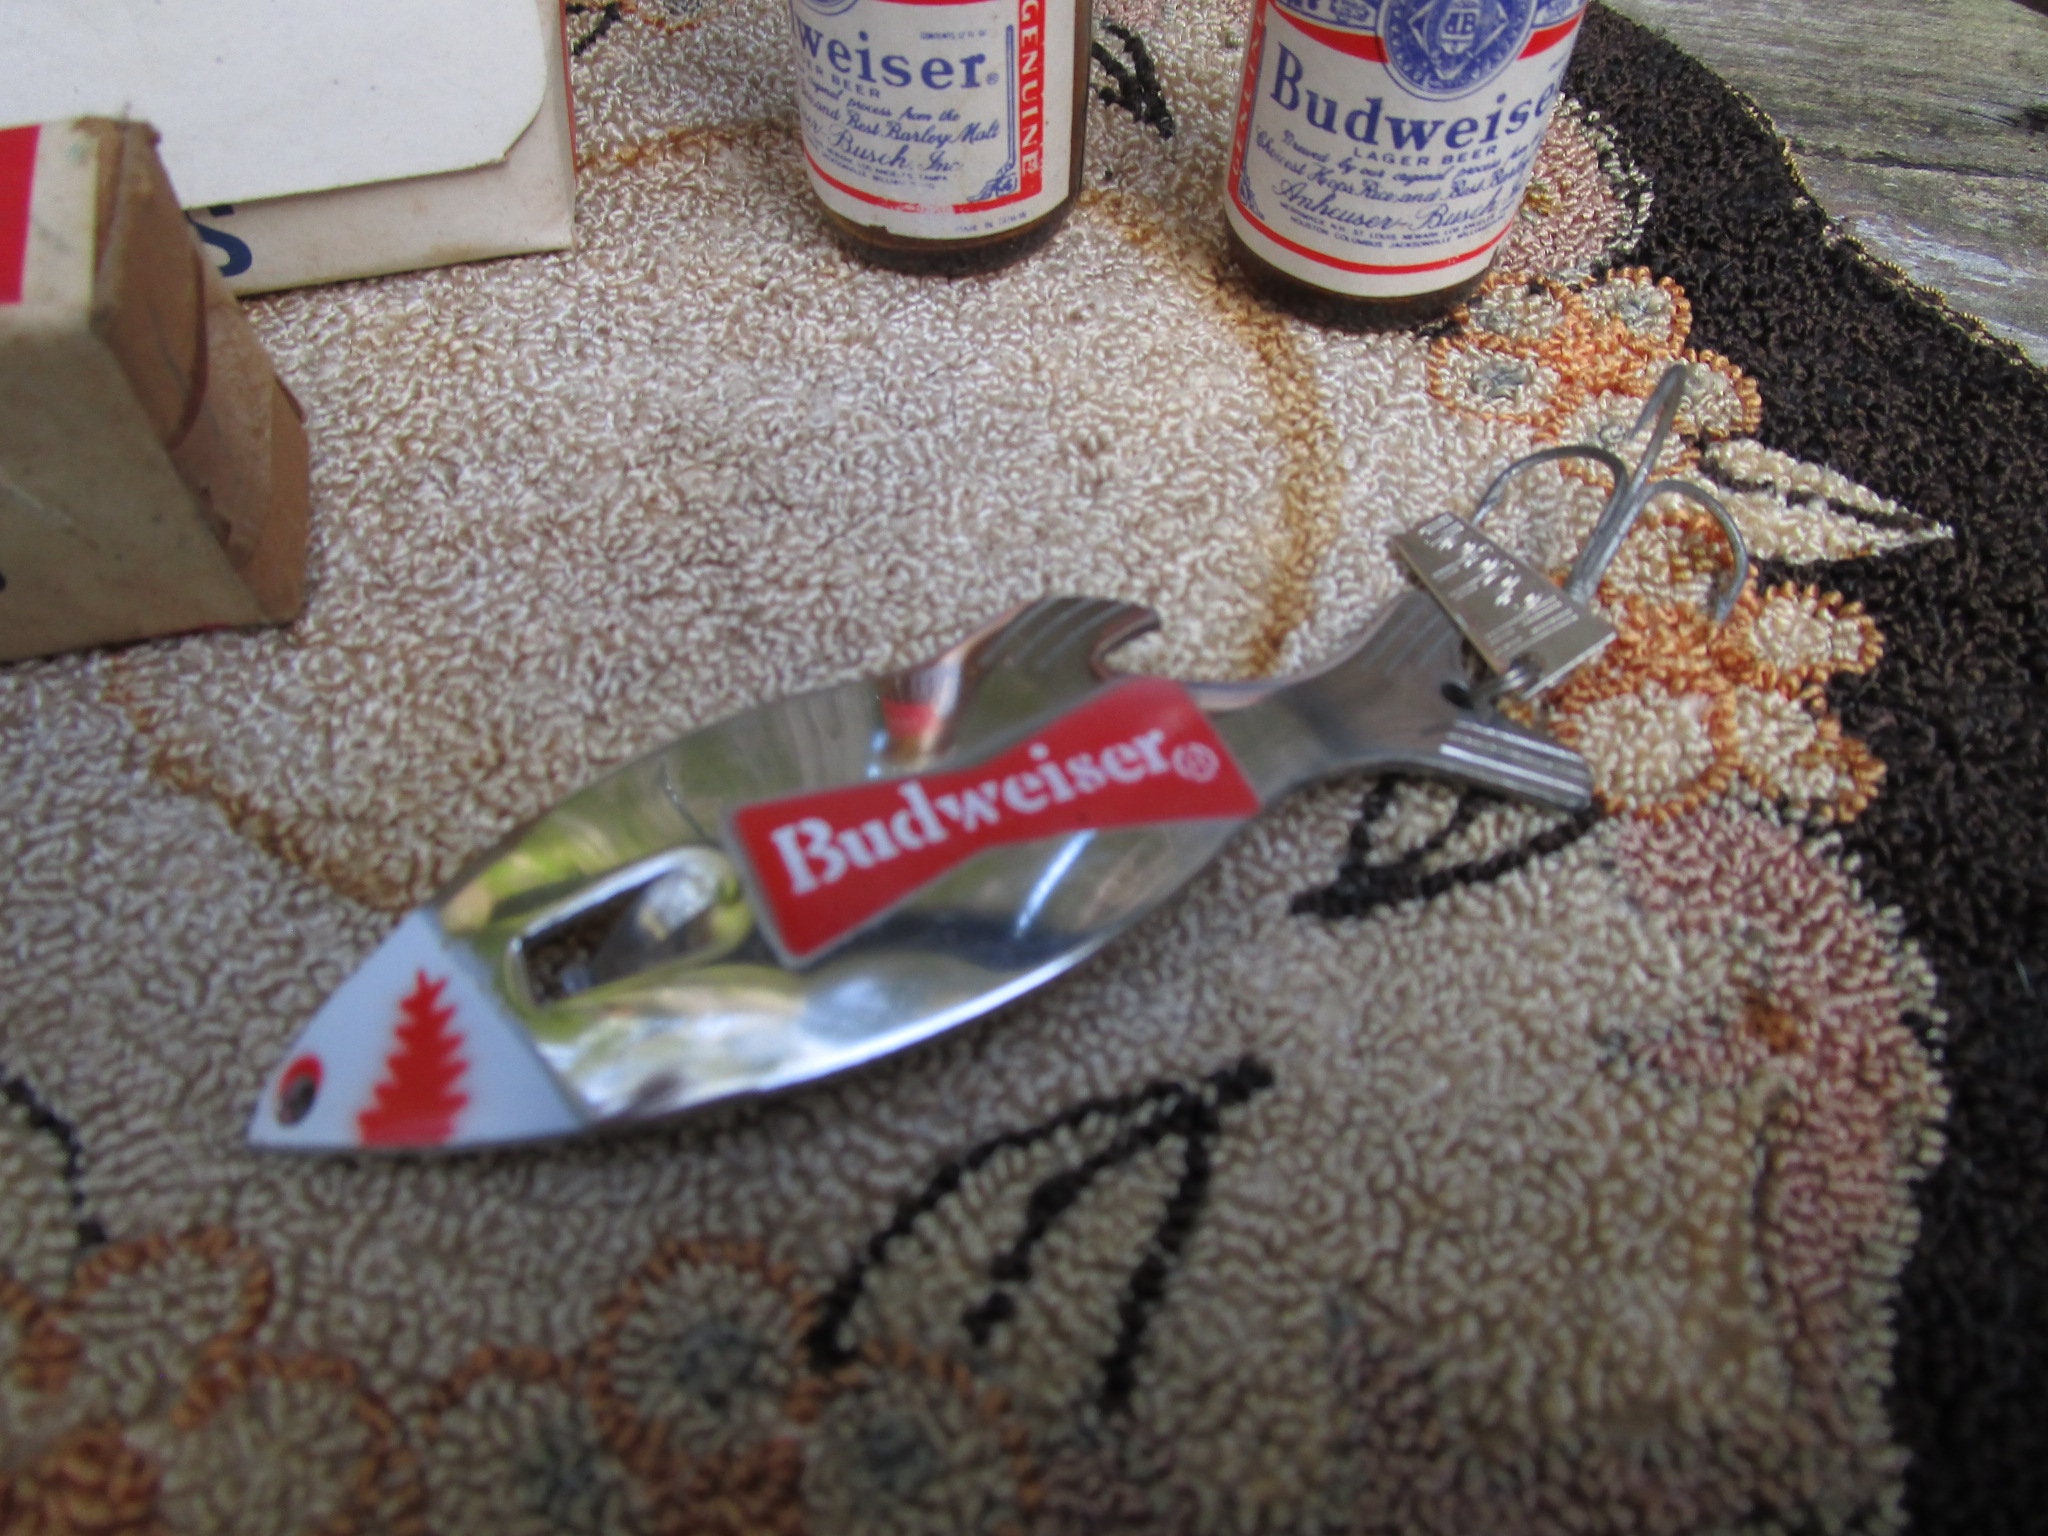 Vintage Budweiser Fishing Lure - Budweiser Growler Heddon Lure - Budweiser  Bottle Opener Fishing Lure